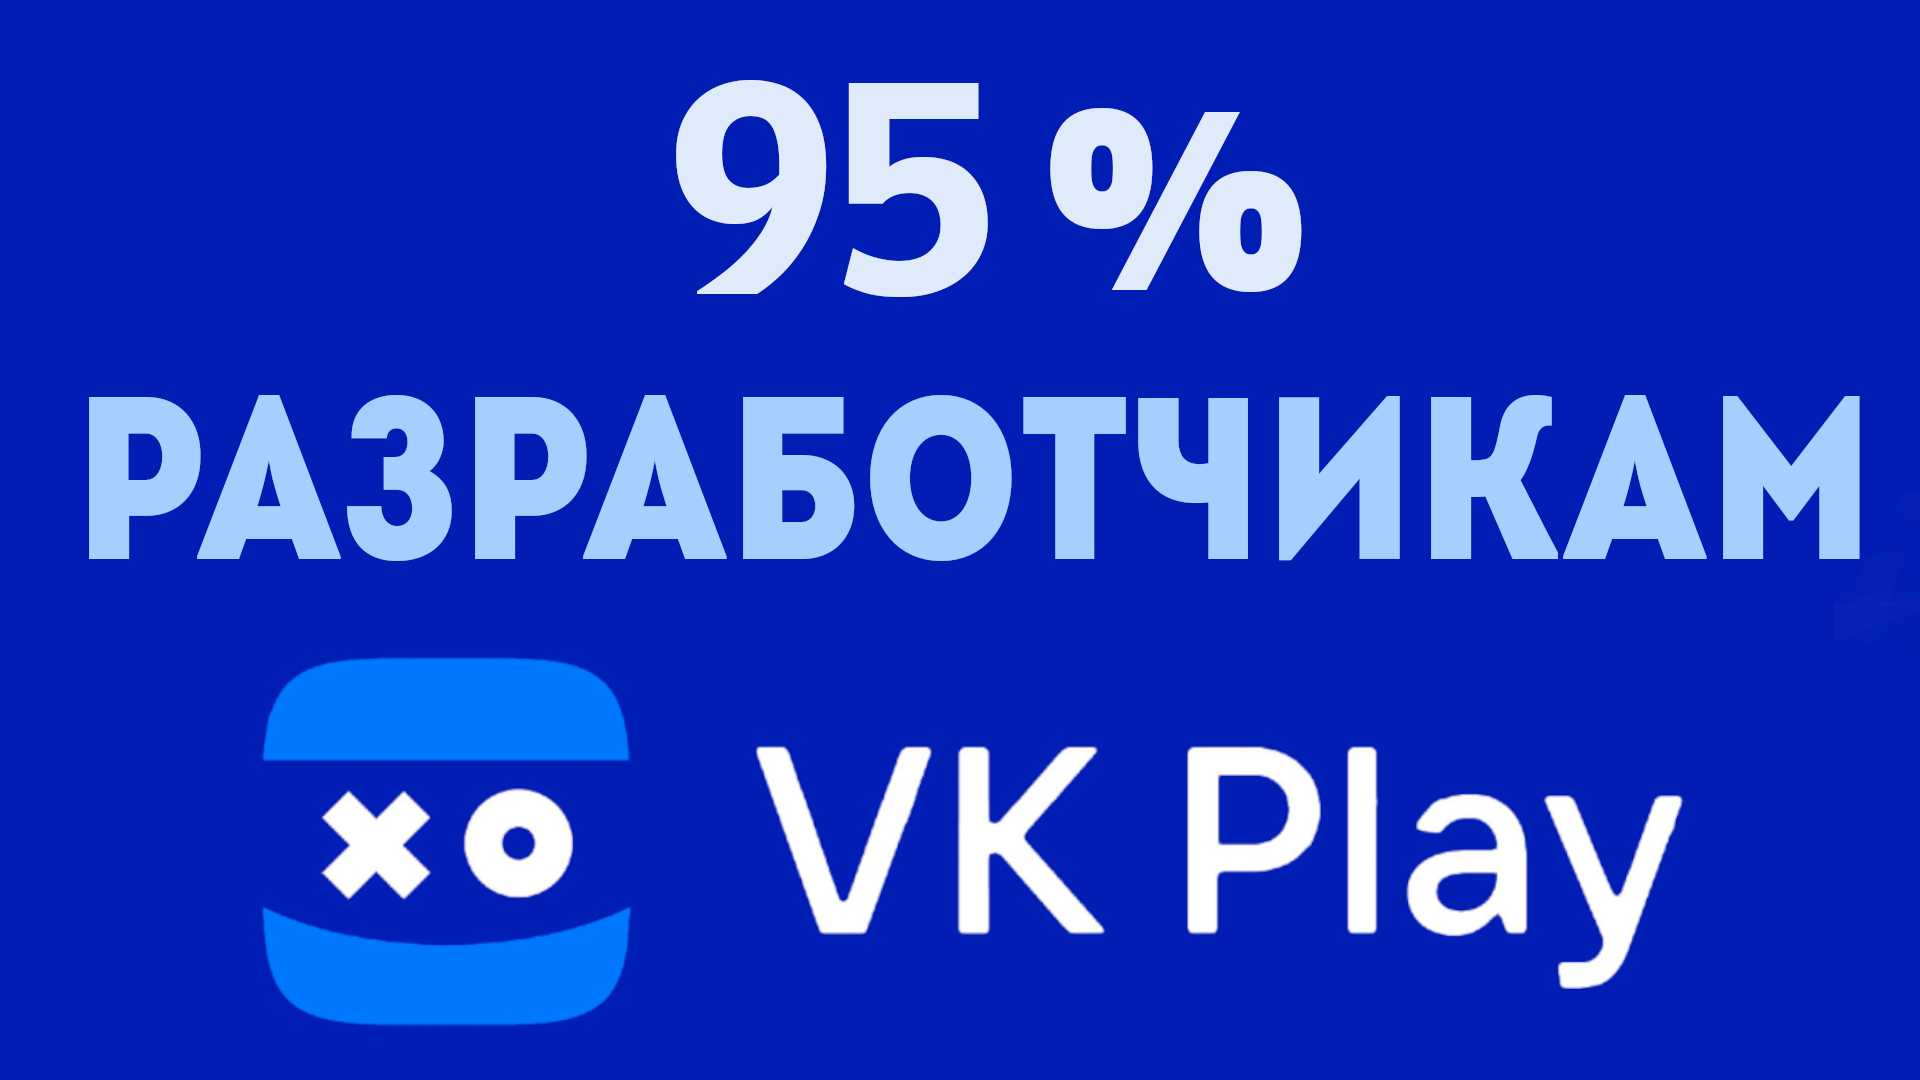 VK PLAY Разработчикам 95 процентов дохода, для разработчиков игр